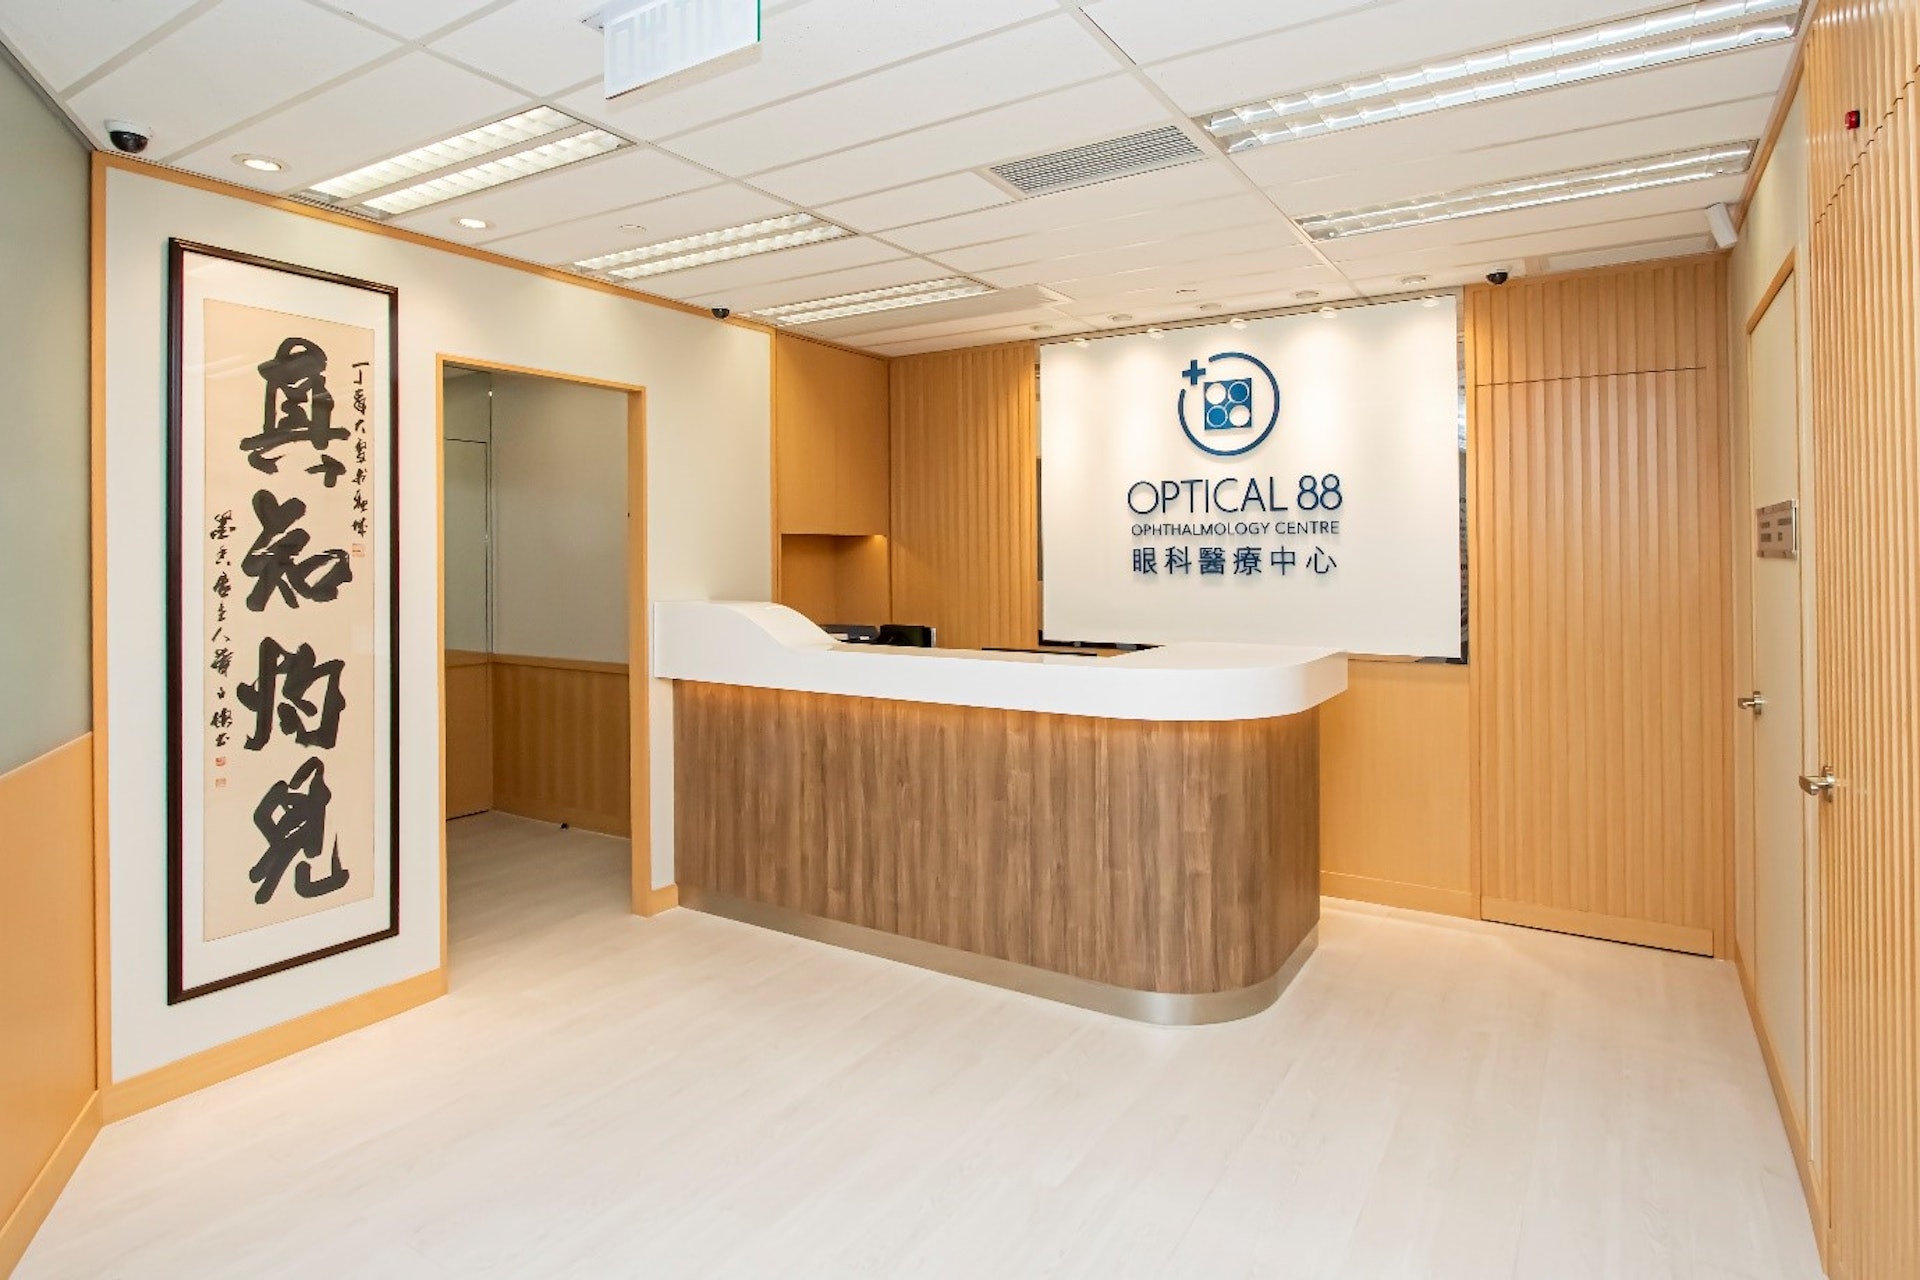 眼鏡88眼科醫療中心，由眼科專科醫生團隊負責，為客人提供診斷、藥物及手術治療服務。